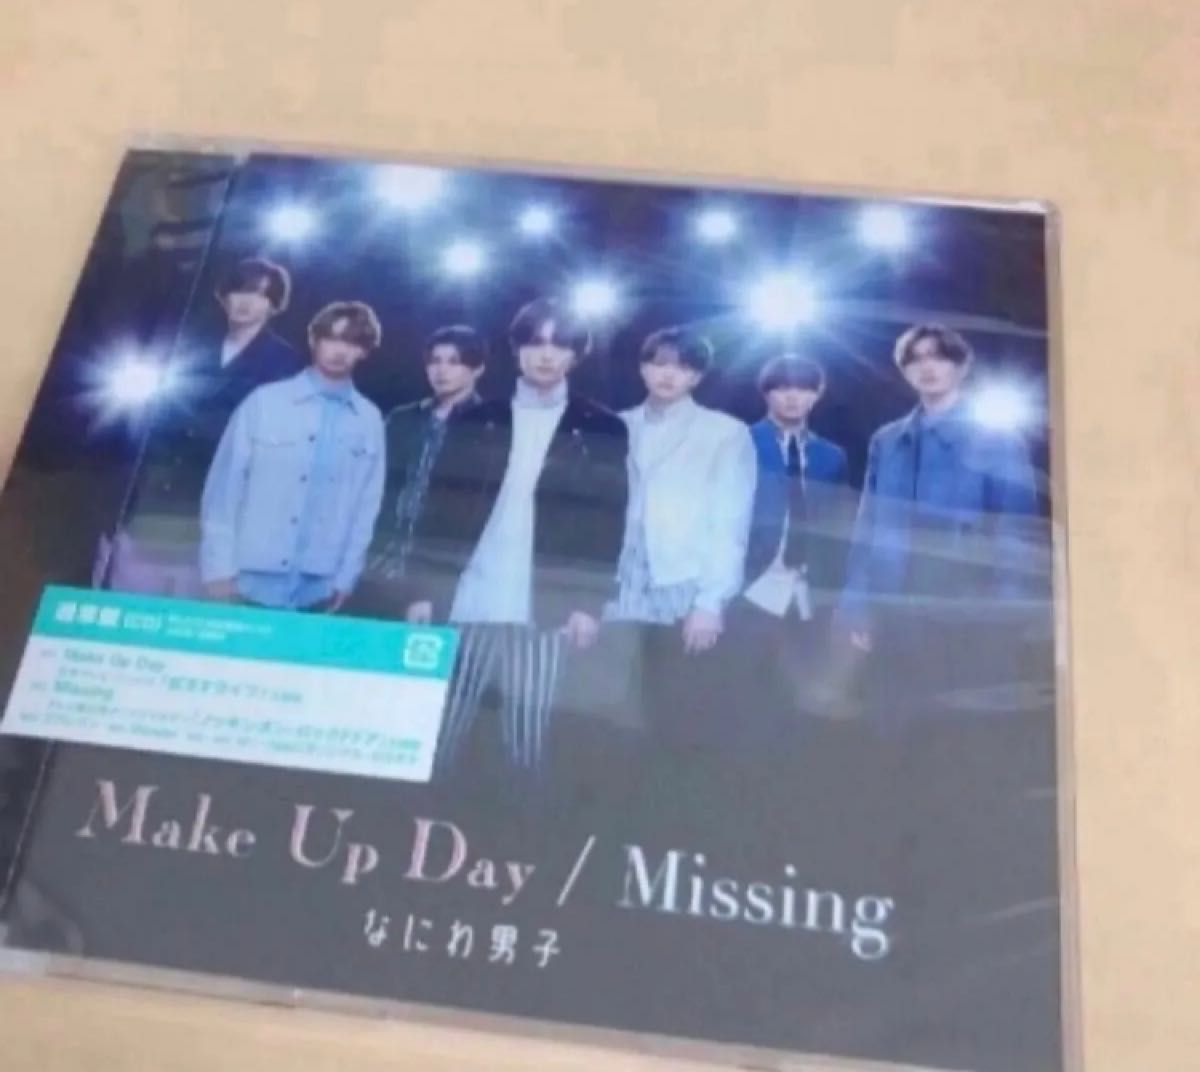 なにわ男子／Make Up Day / Missing（通常盤） なにわ男子 CD